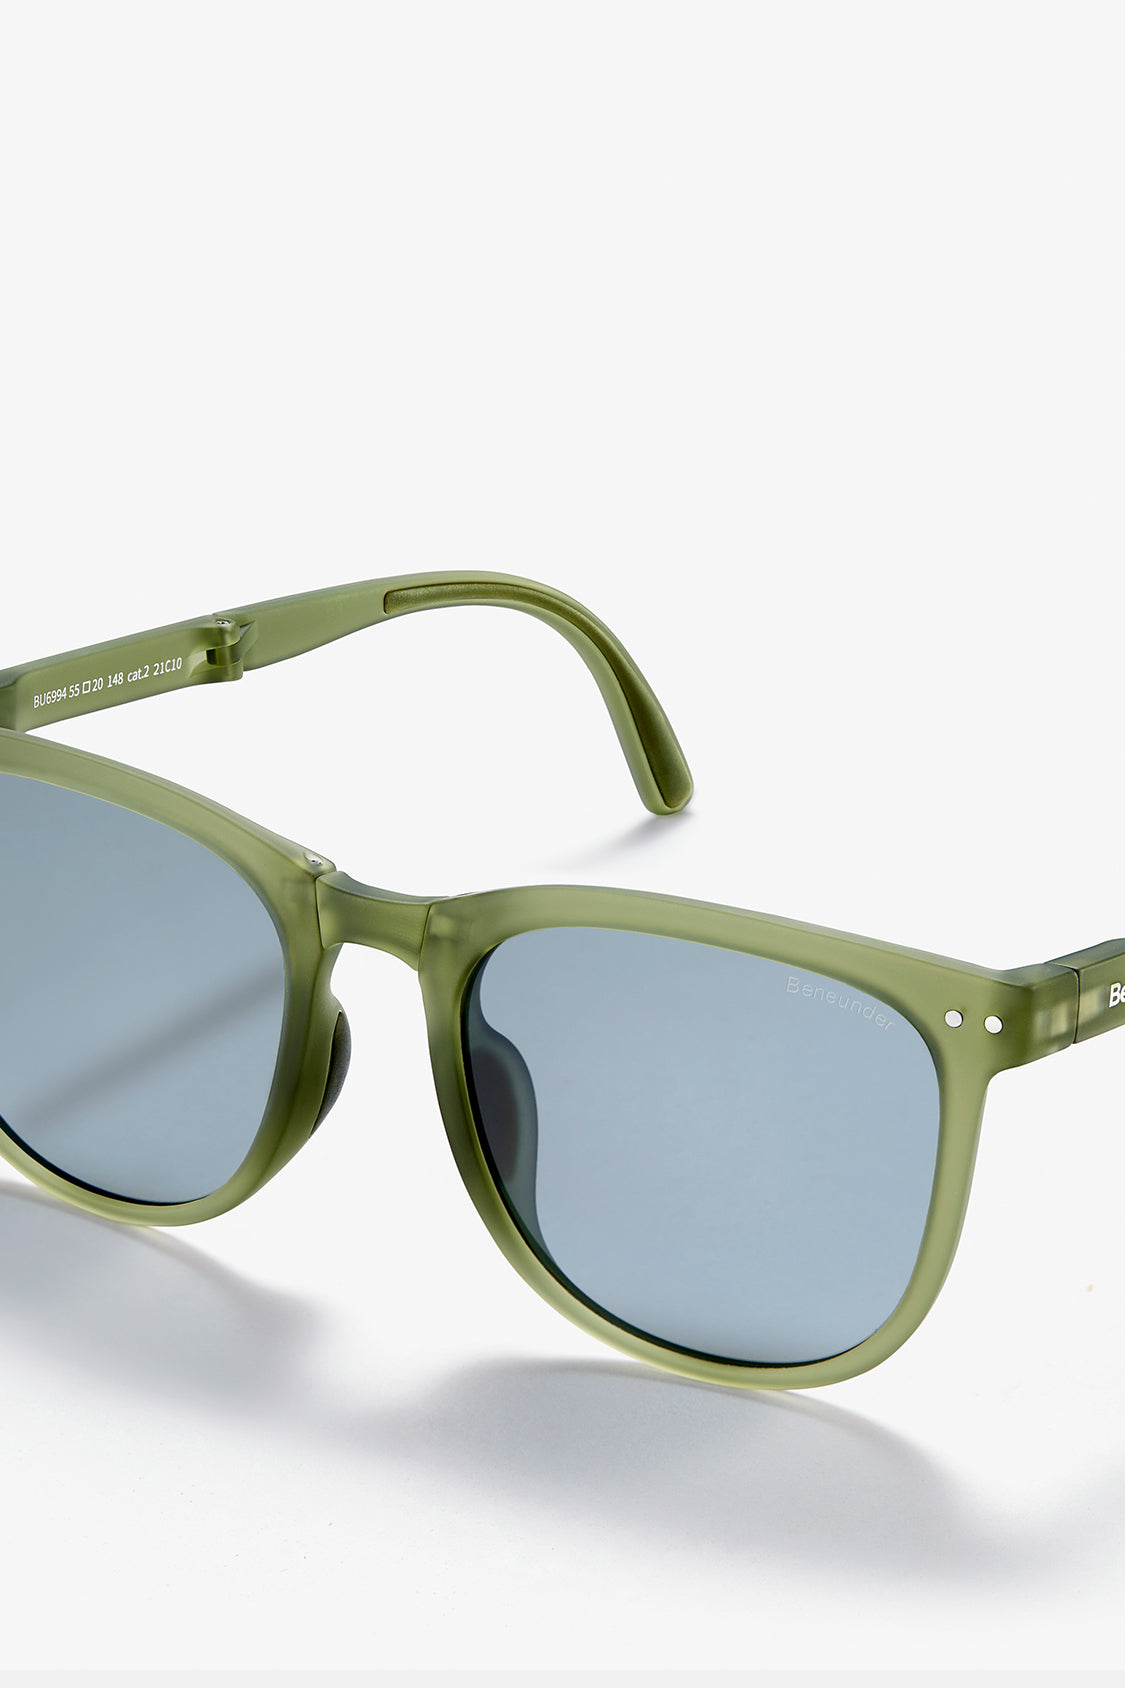 beneunder men's dawn polarized folding sunglasses shades #color_beneunder men's dawn polarized folding sunglasses shades #color_ink pine green